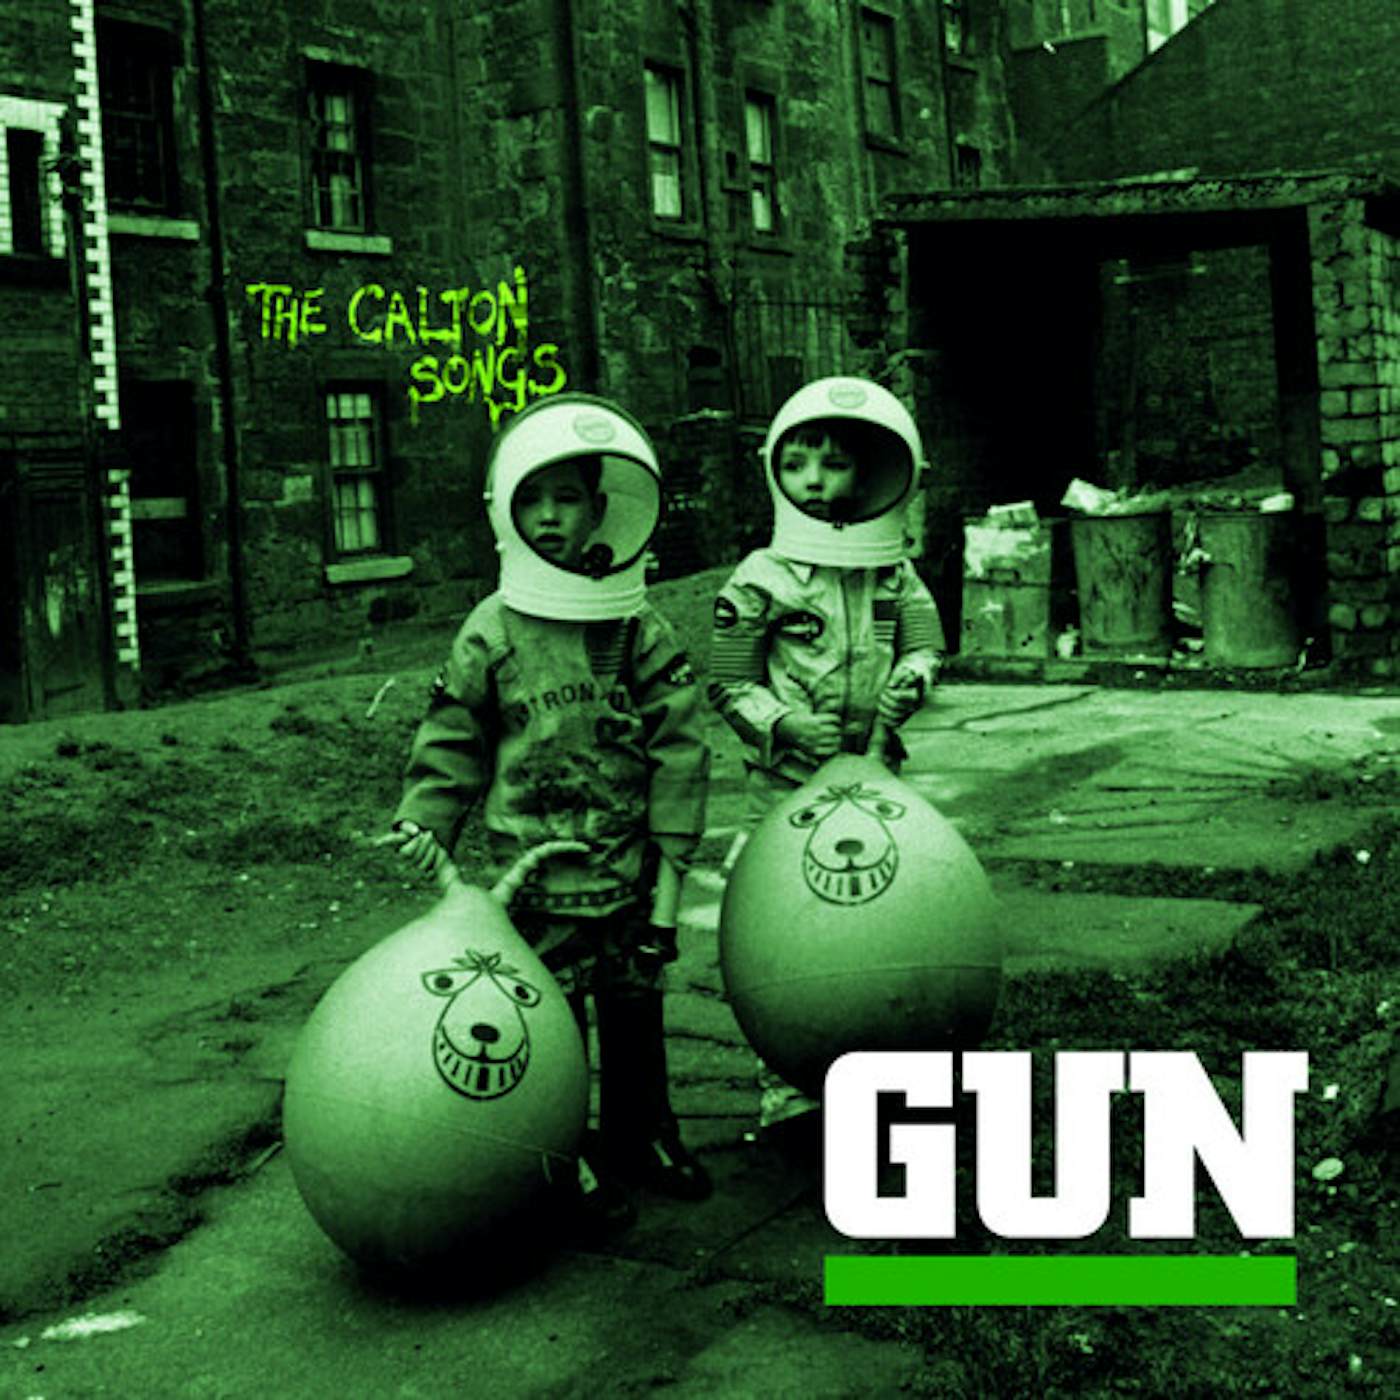 Gun CALTON SONGS Vinyl Record